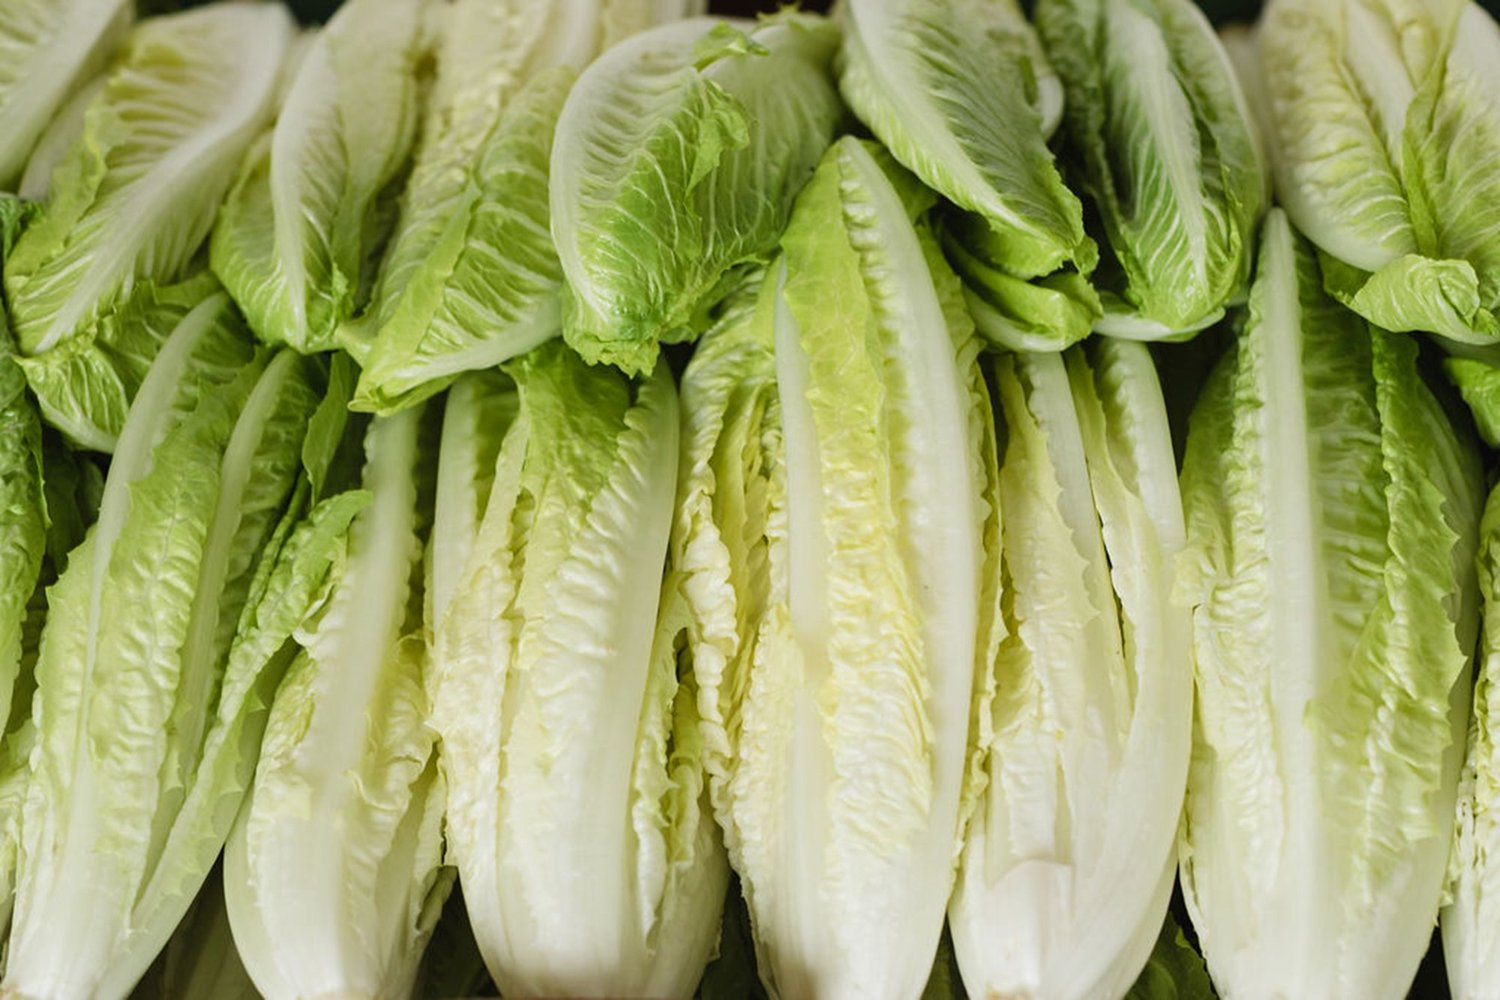 Green Leaf Lettuce Nutrition Facts & Information